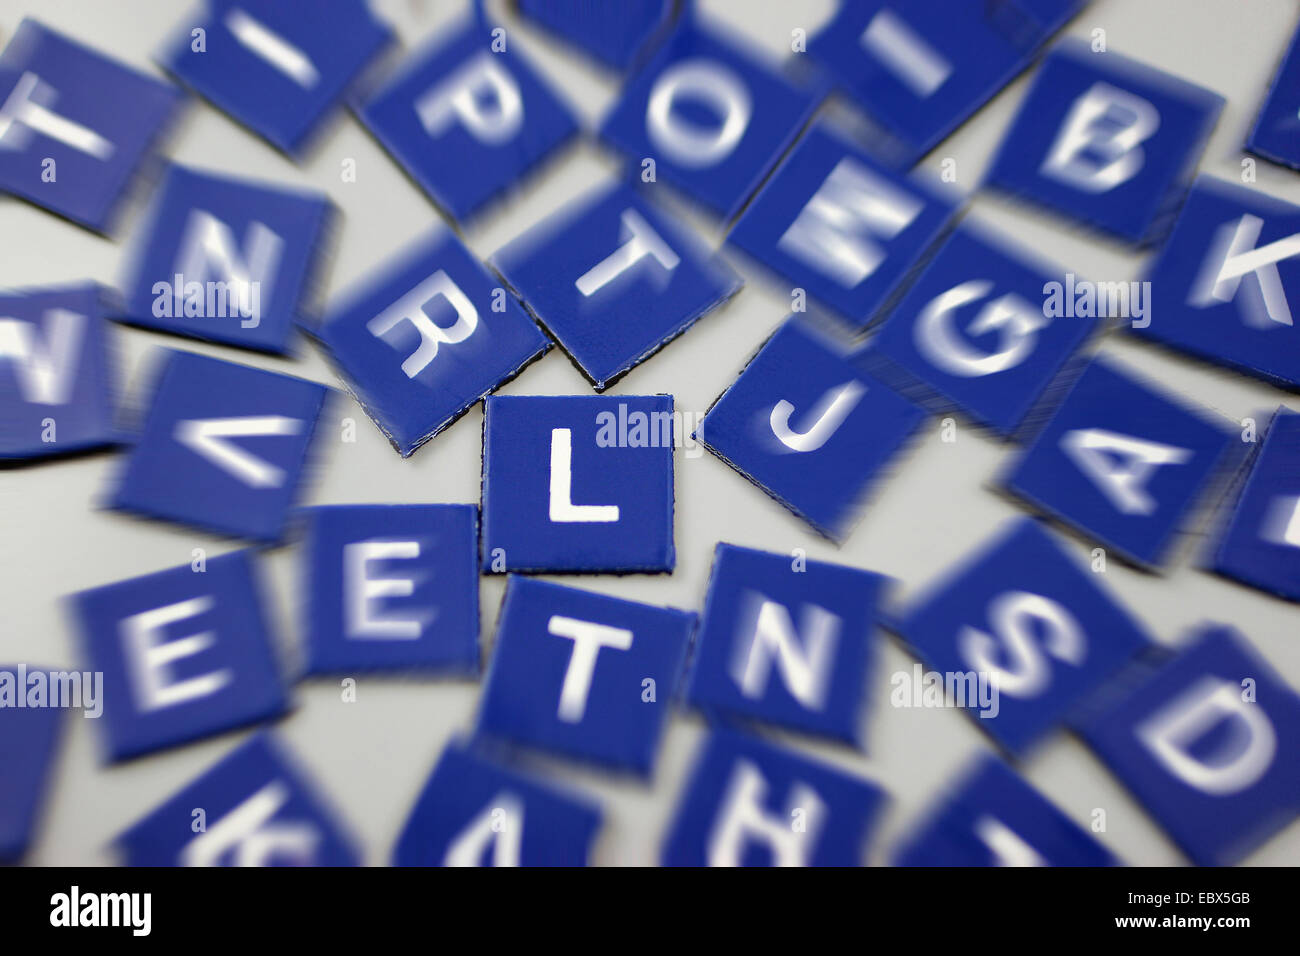 Fichas de Scrabble en azul con foco en L Foto de stock